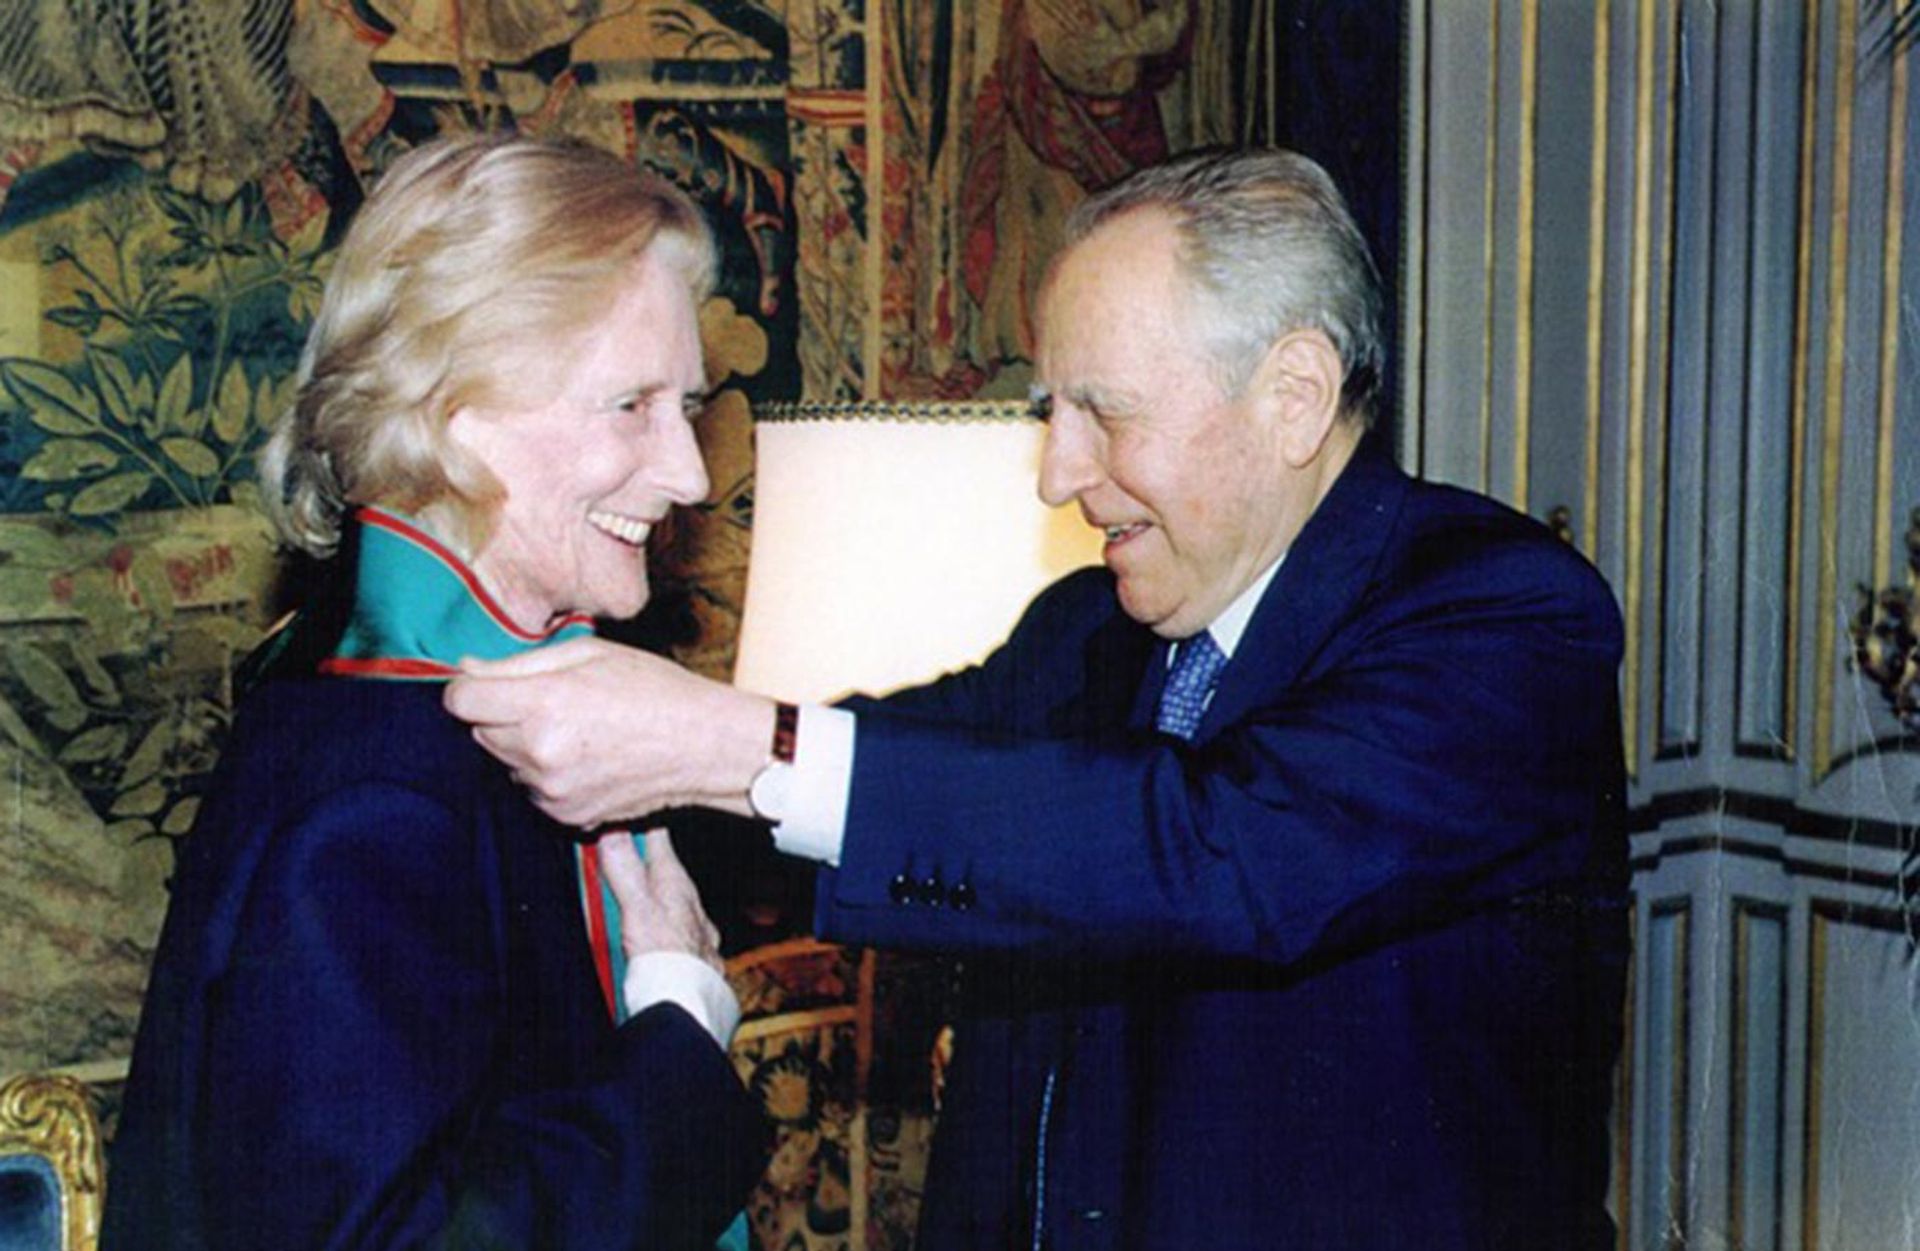 Desideria Pasolina Dall'Onda is made Cavaliere di Gran Croce, Italy's most prestigious civilian award, by President Carlo Ciampi, 2001 Courtesy of Italia Nostra